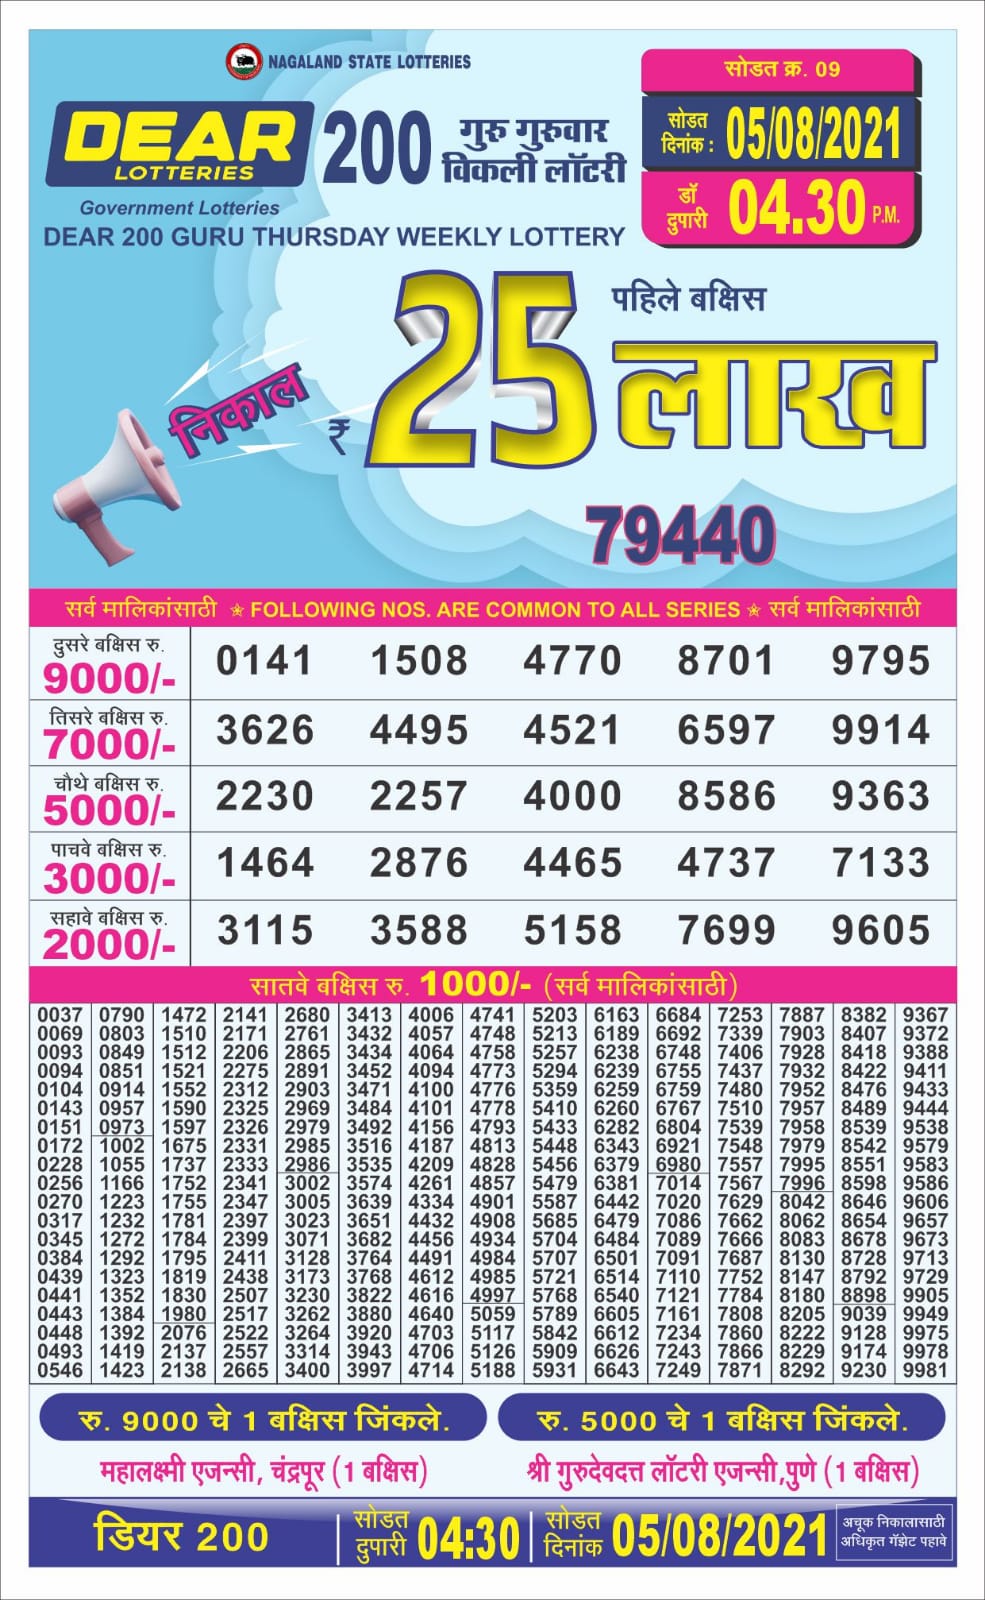 Dear 200 guru weekly lottery 04.30 pm 05-08-2021